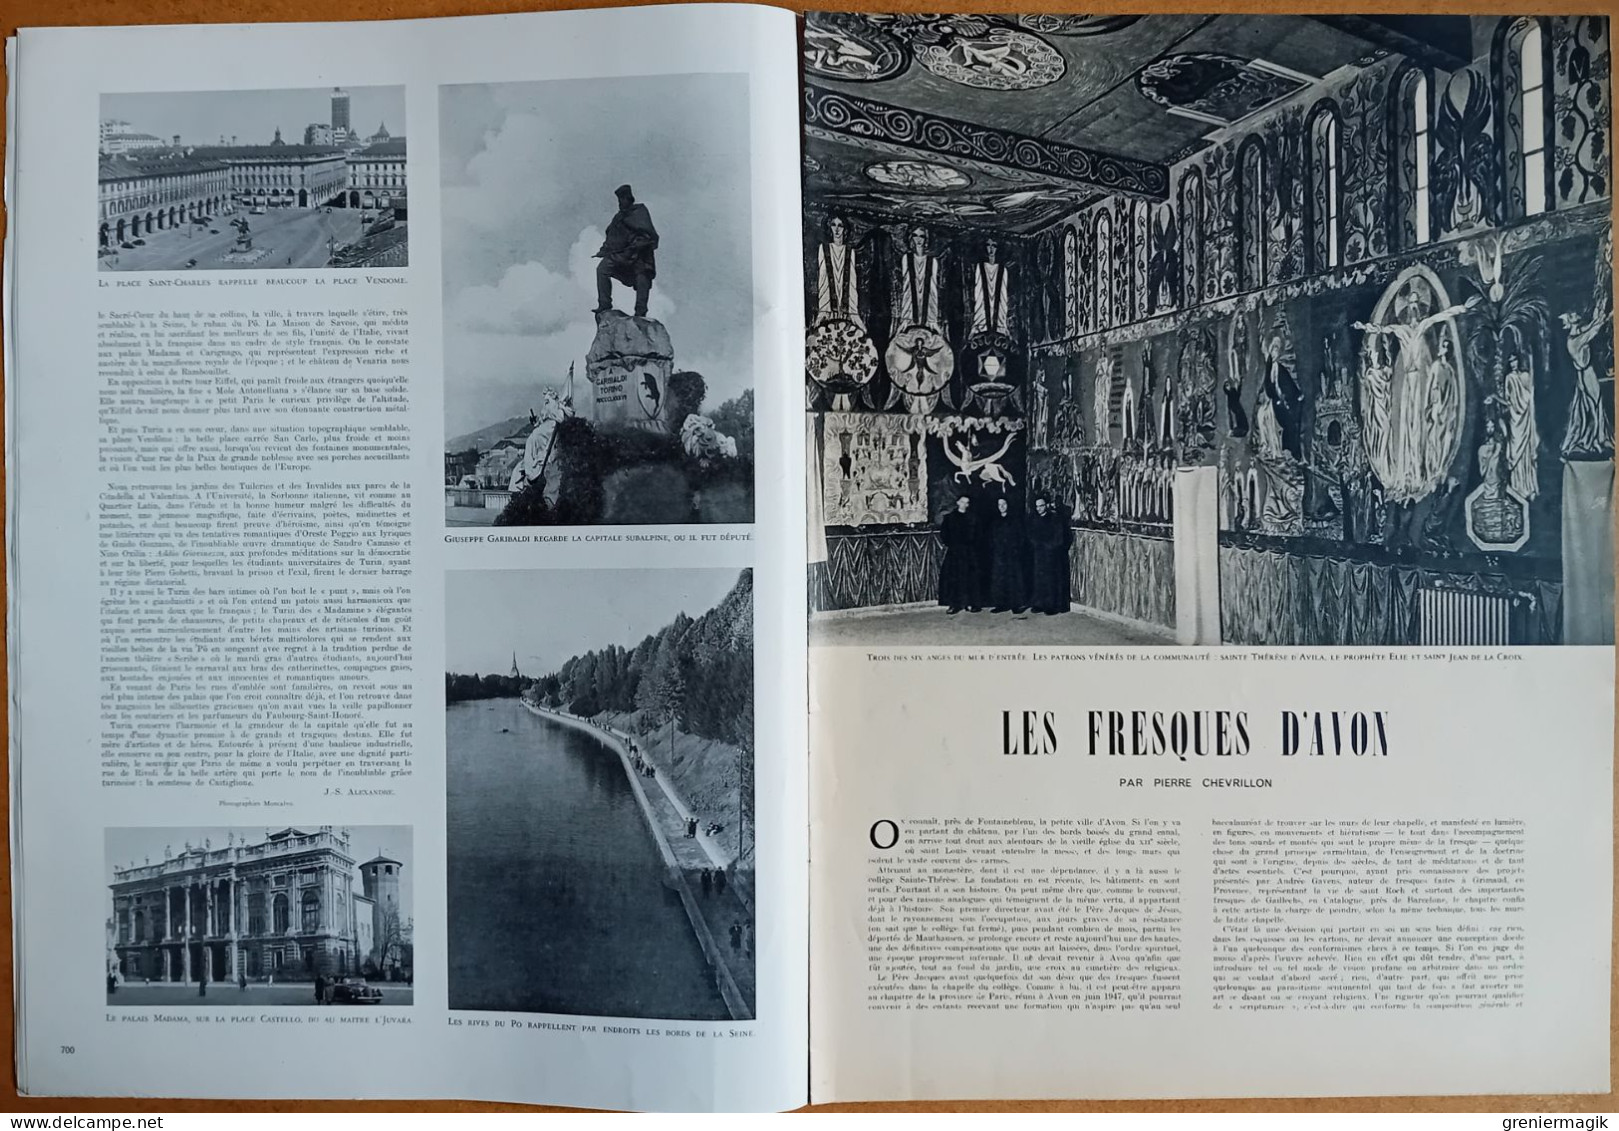 France Illustration N°219 24/12/1949 Pétrole Irak Bagdad/Fresques d'Avon/Chapelle de Matisse/Bordeaux/Turin/Mode